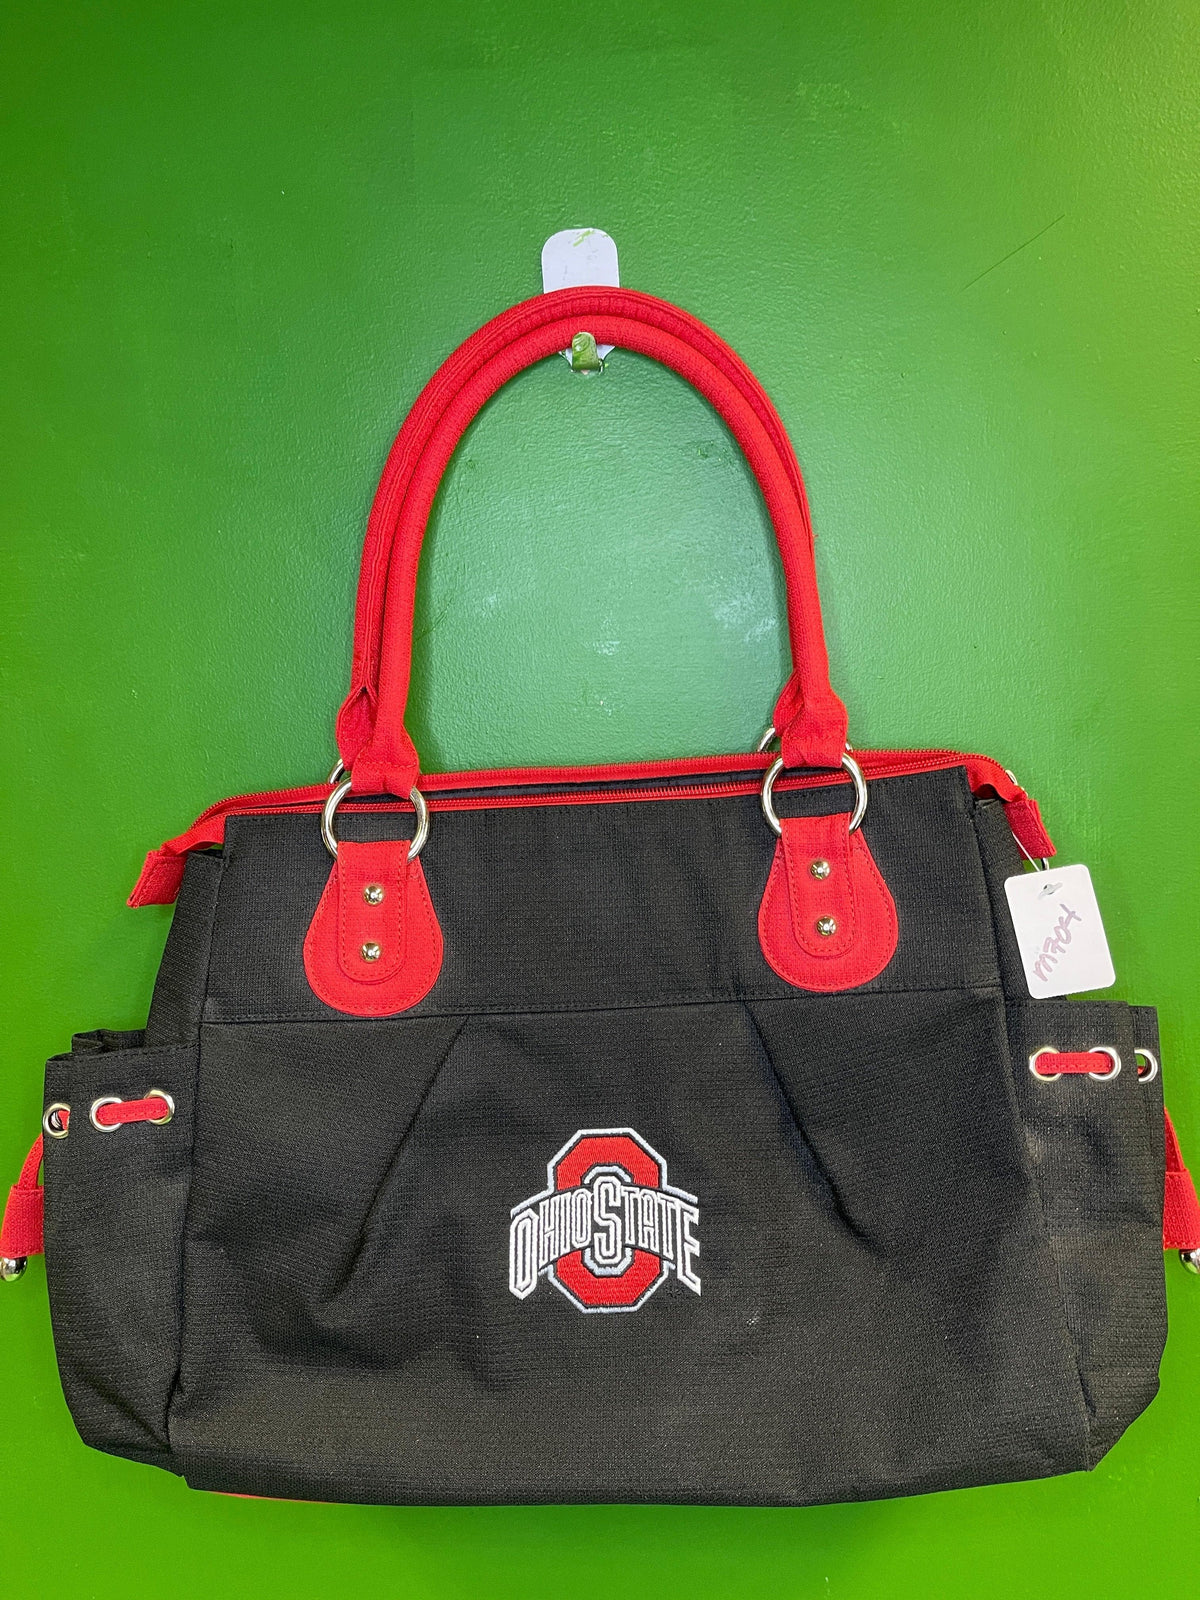 NCAA Ohio State Buckeyes Purse Handbag